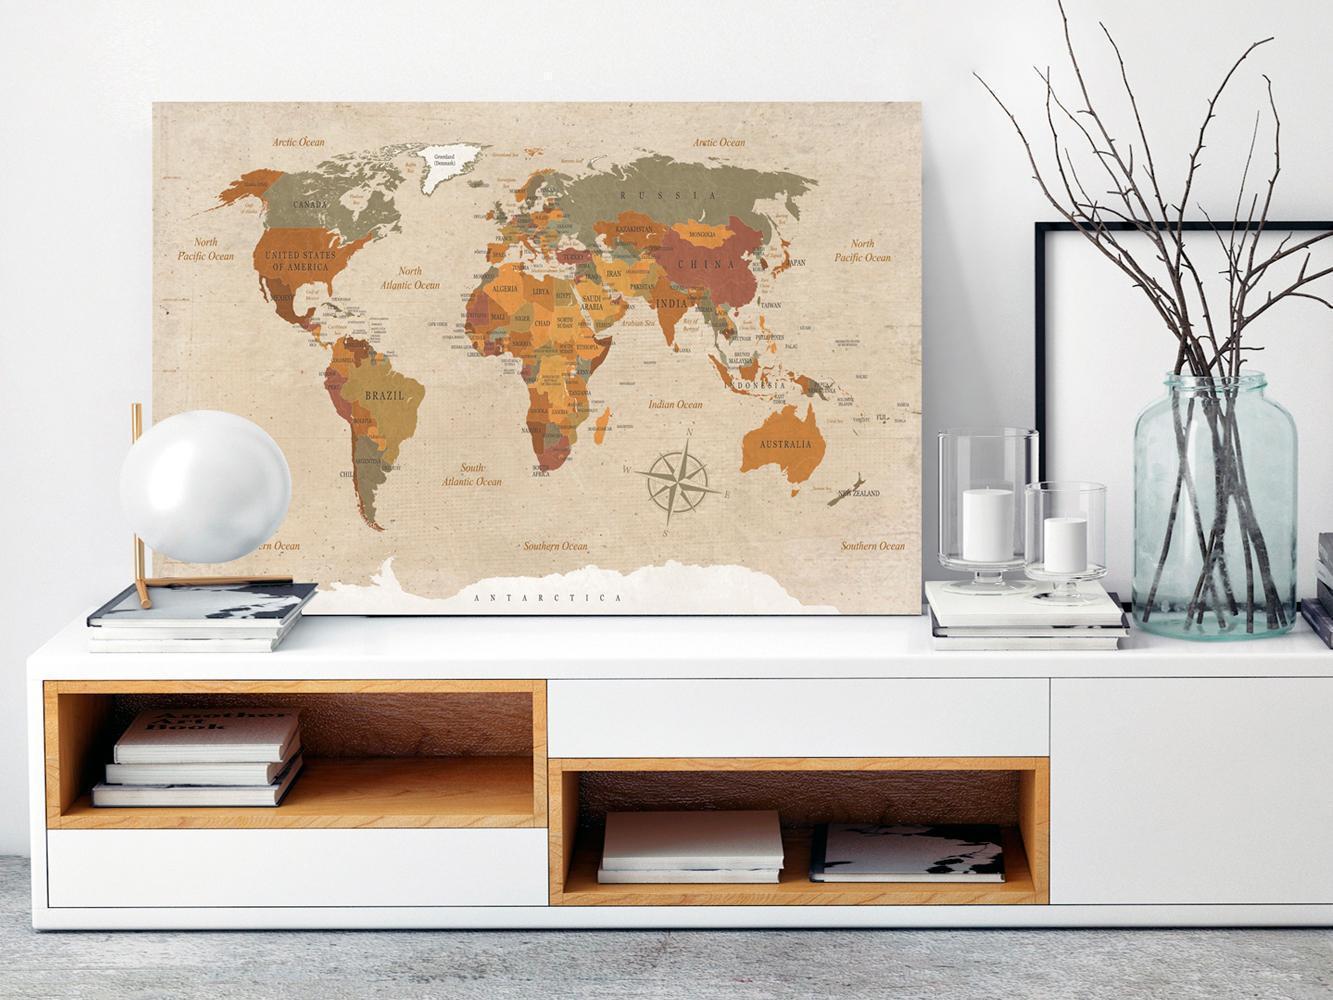 Schilderij - World Map: Beige Chic